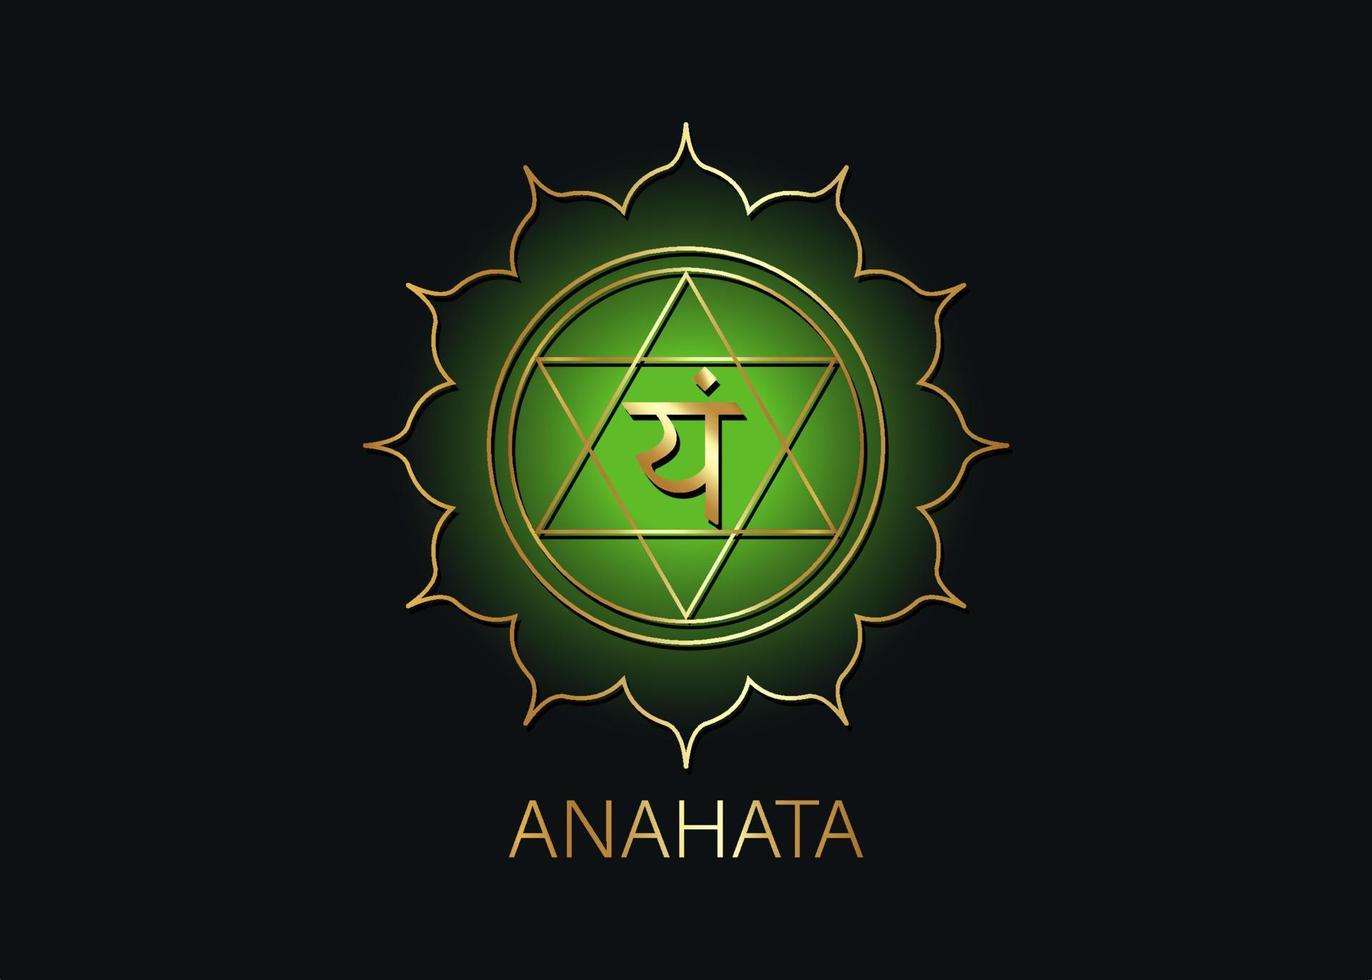 Anahata Fourth chakra with the Hindu Sanskrit seed mantra Vam